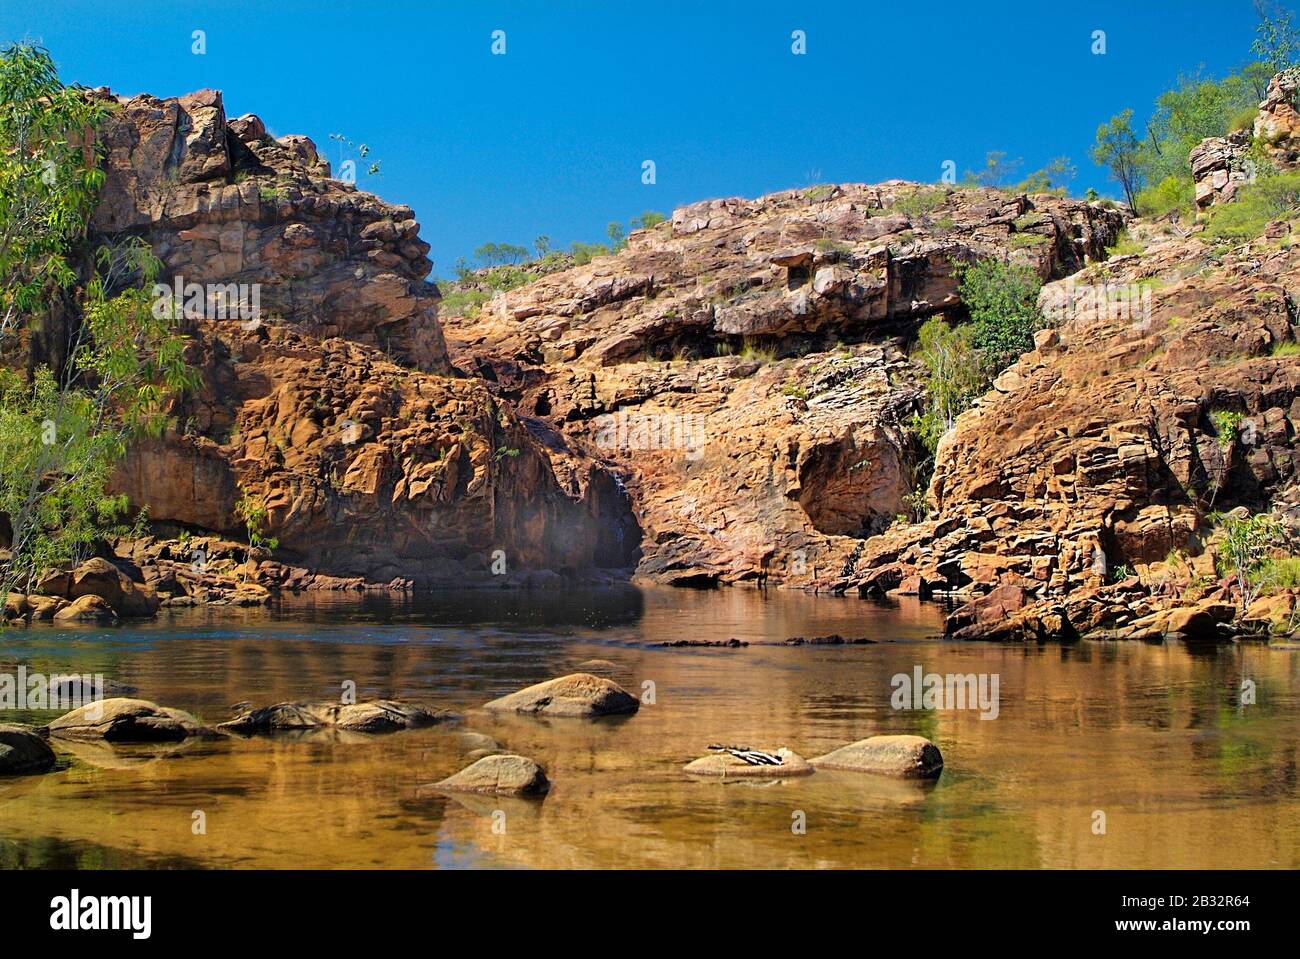 Australie, piscine naturelle à Edith Falls dans le parc national de Nitmiluk Banque D'Images